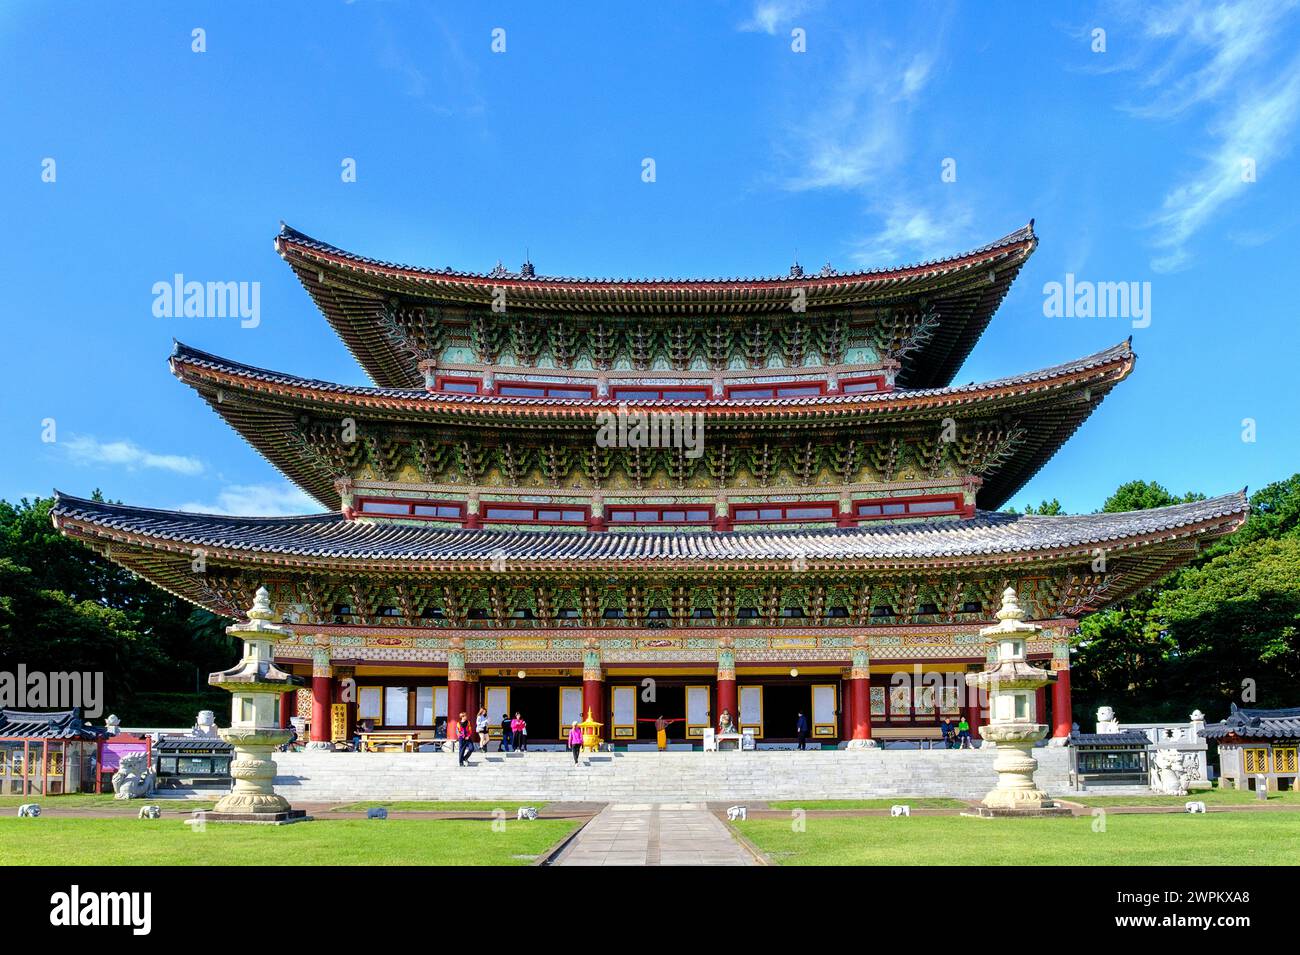 Yakcheonsa Buddhist Temple, 30 Meter hoch, 3305 Quadratmeter groß, der größte Tempel in Asien, Jeju Island, Südkorea, Asien Stockfoto